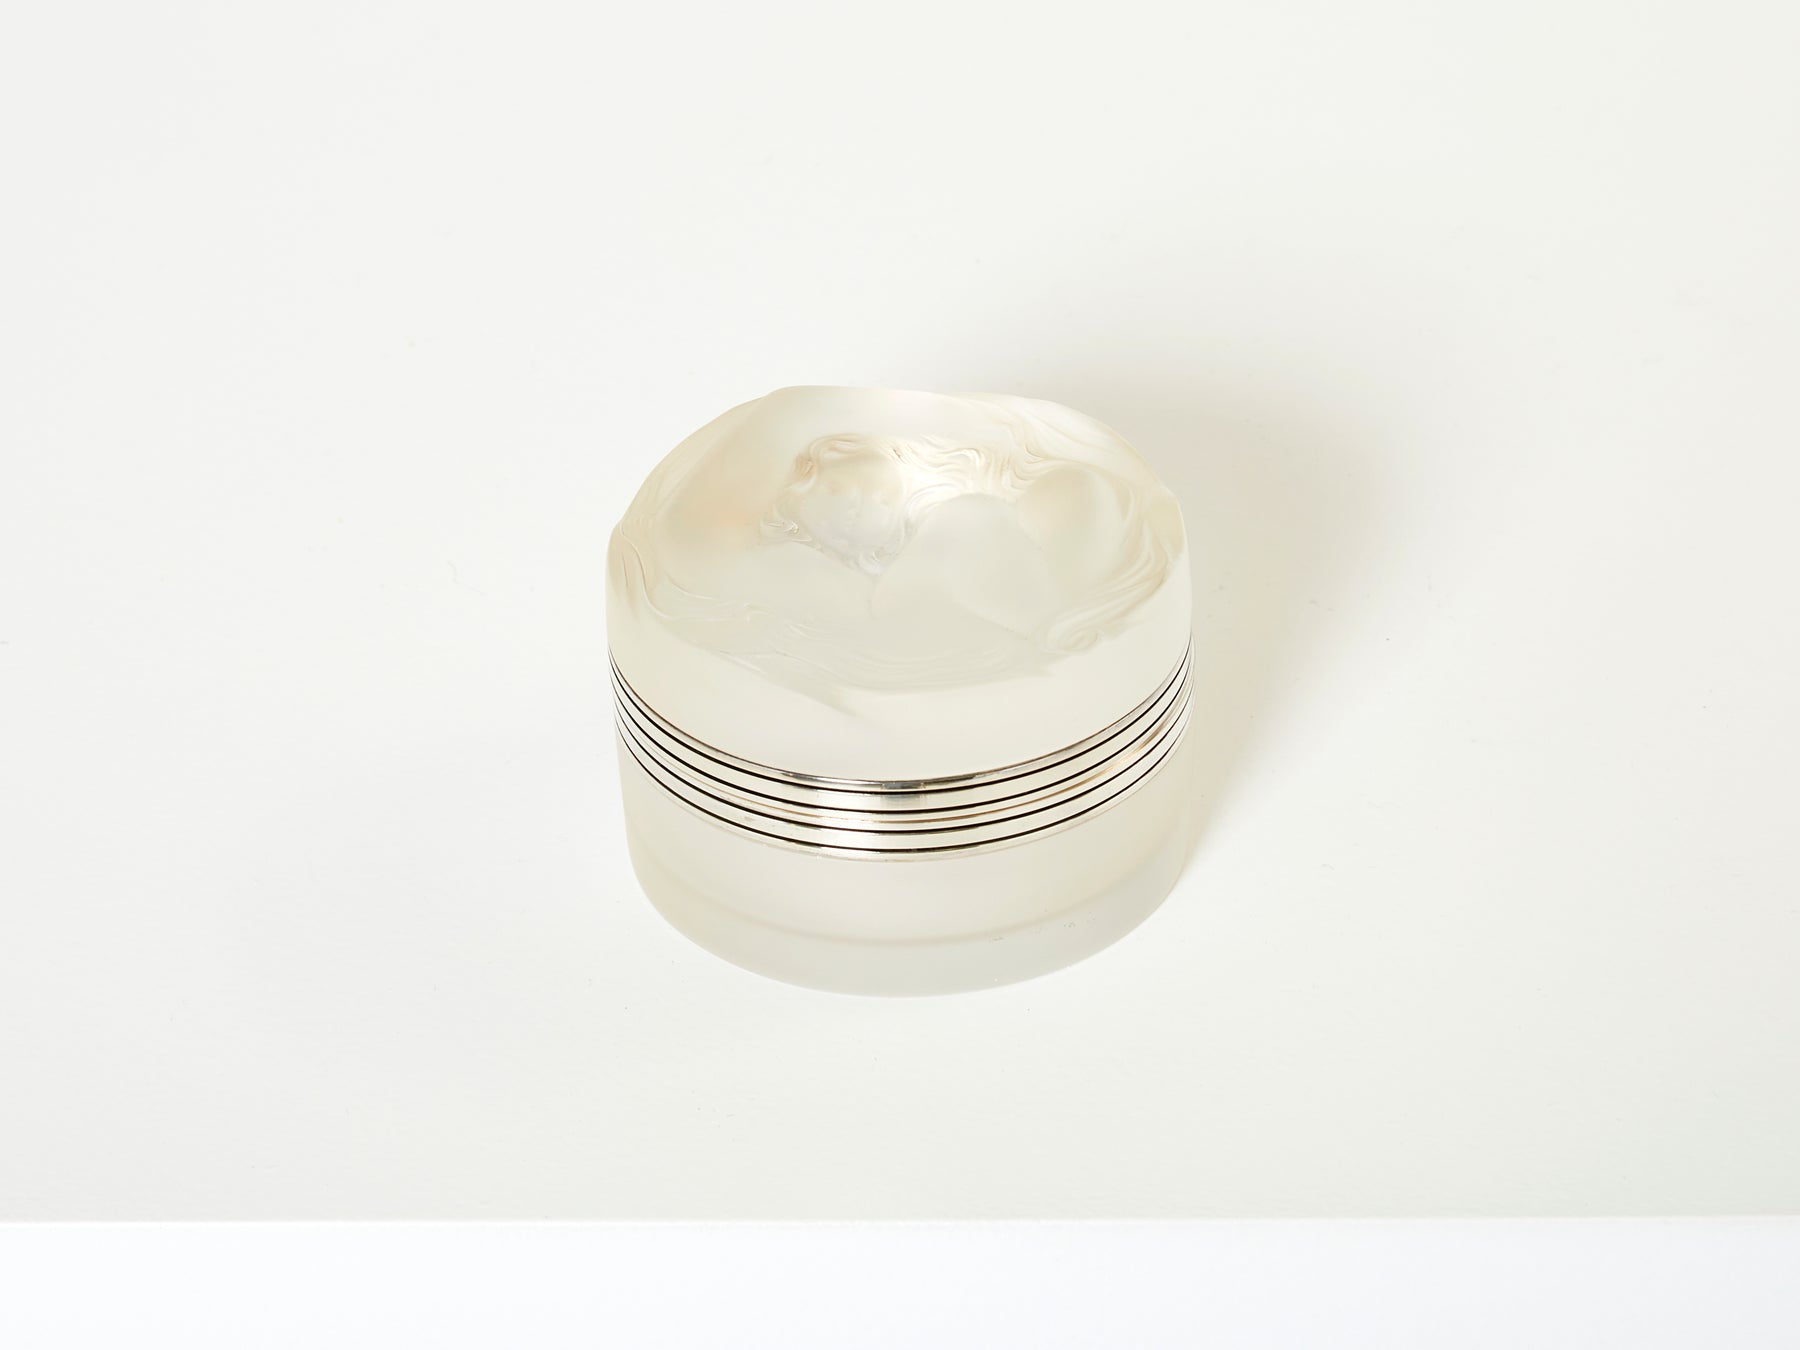 Petite boite ronde cristal René Lalique modèle Daphné vers 1940 